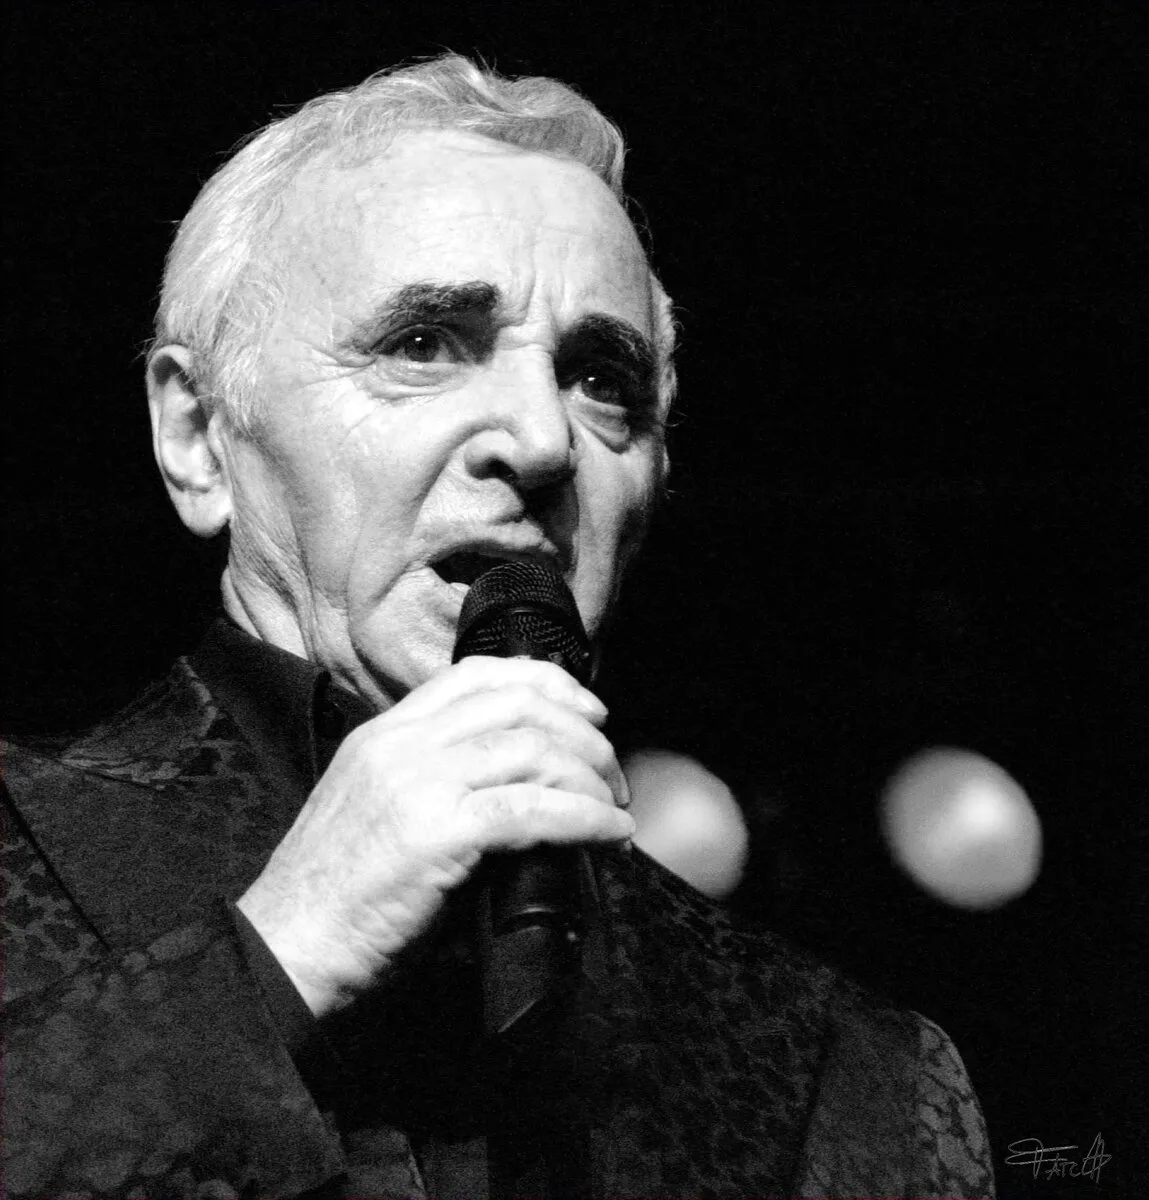 Portrait de charles aznavour réalisé par Fatch photographe Baixes fabrice  